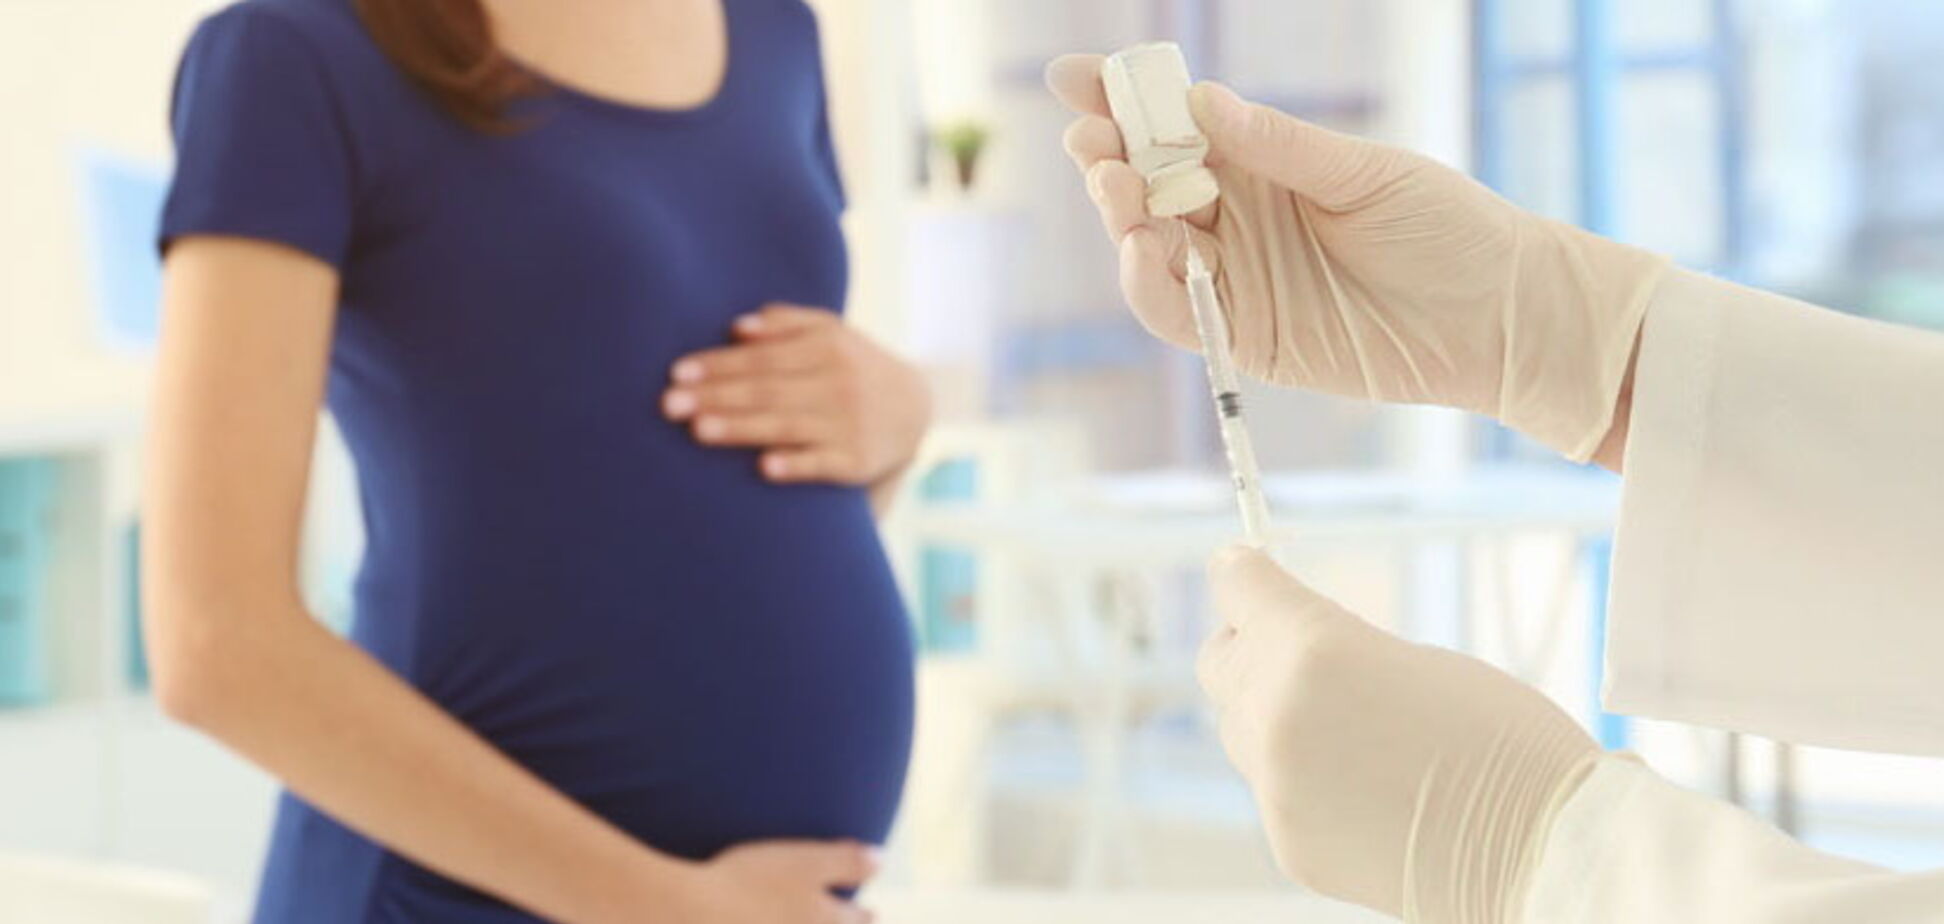 Коронавирус: существует ли опасность для беременных?